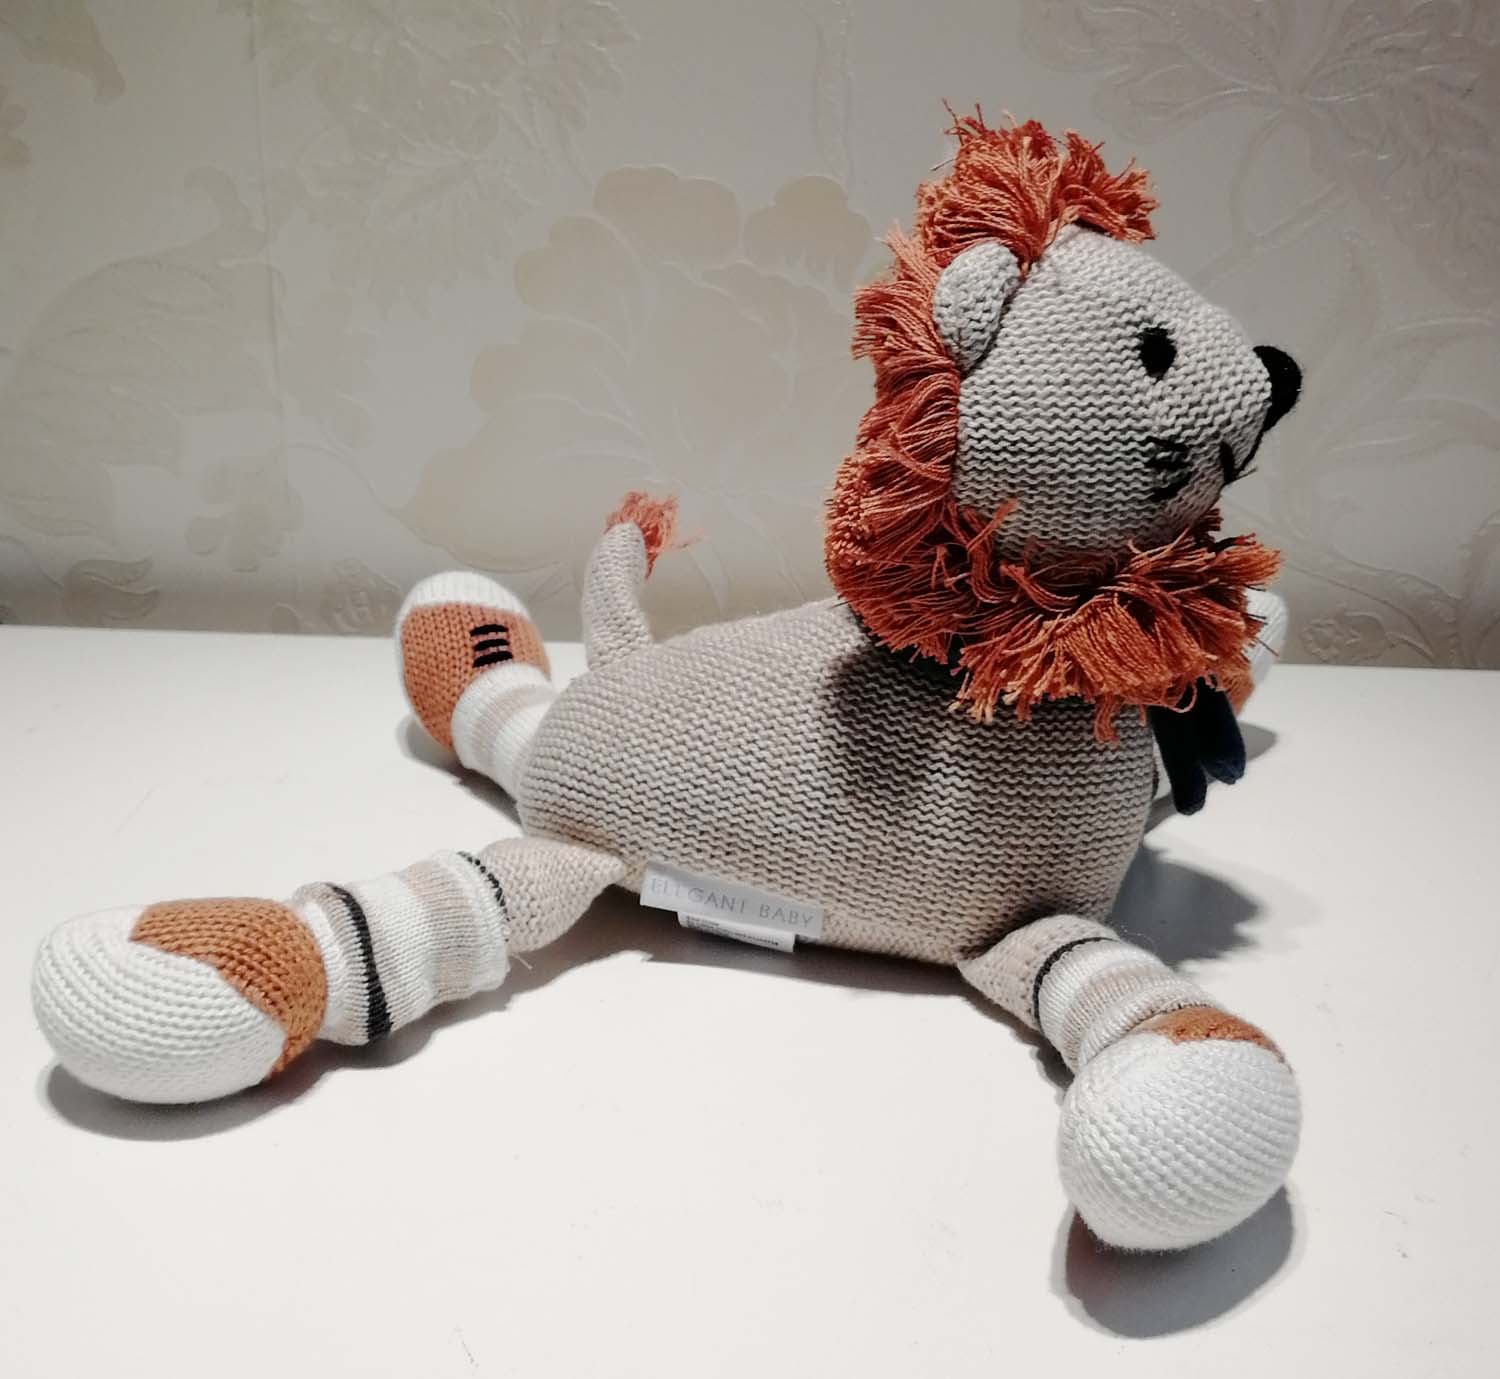 Chinese plush toy of stuffed lion